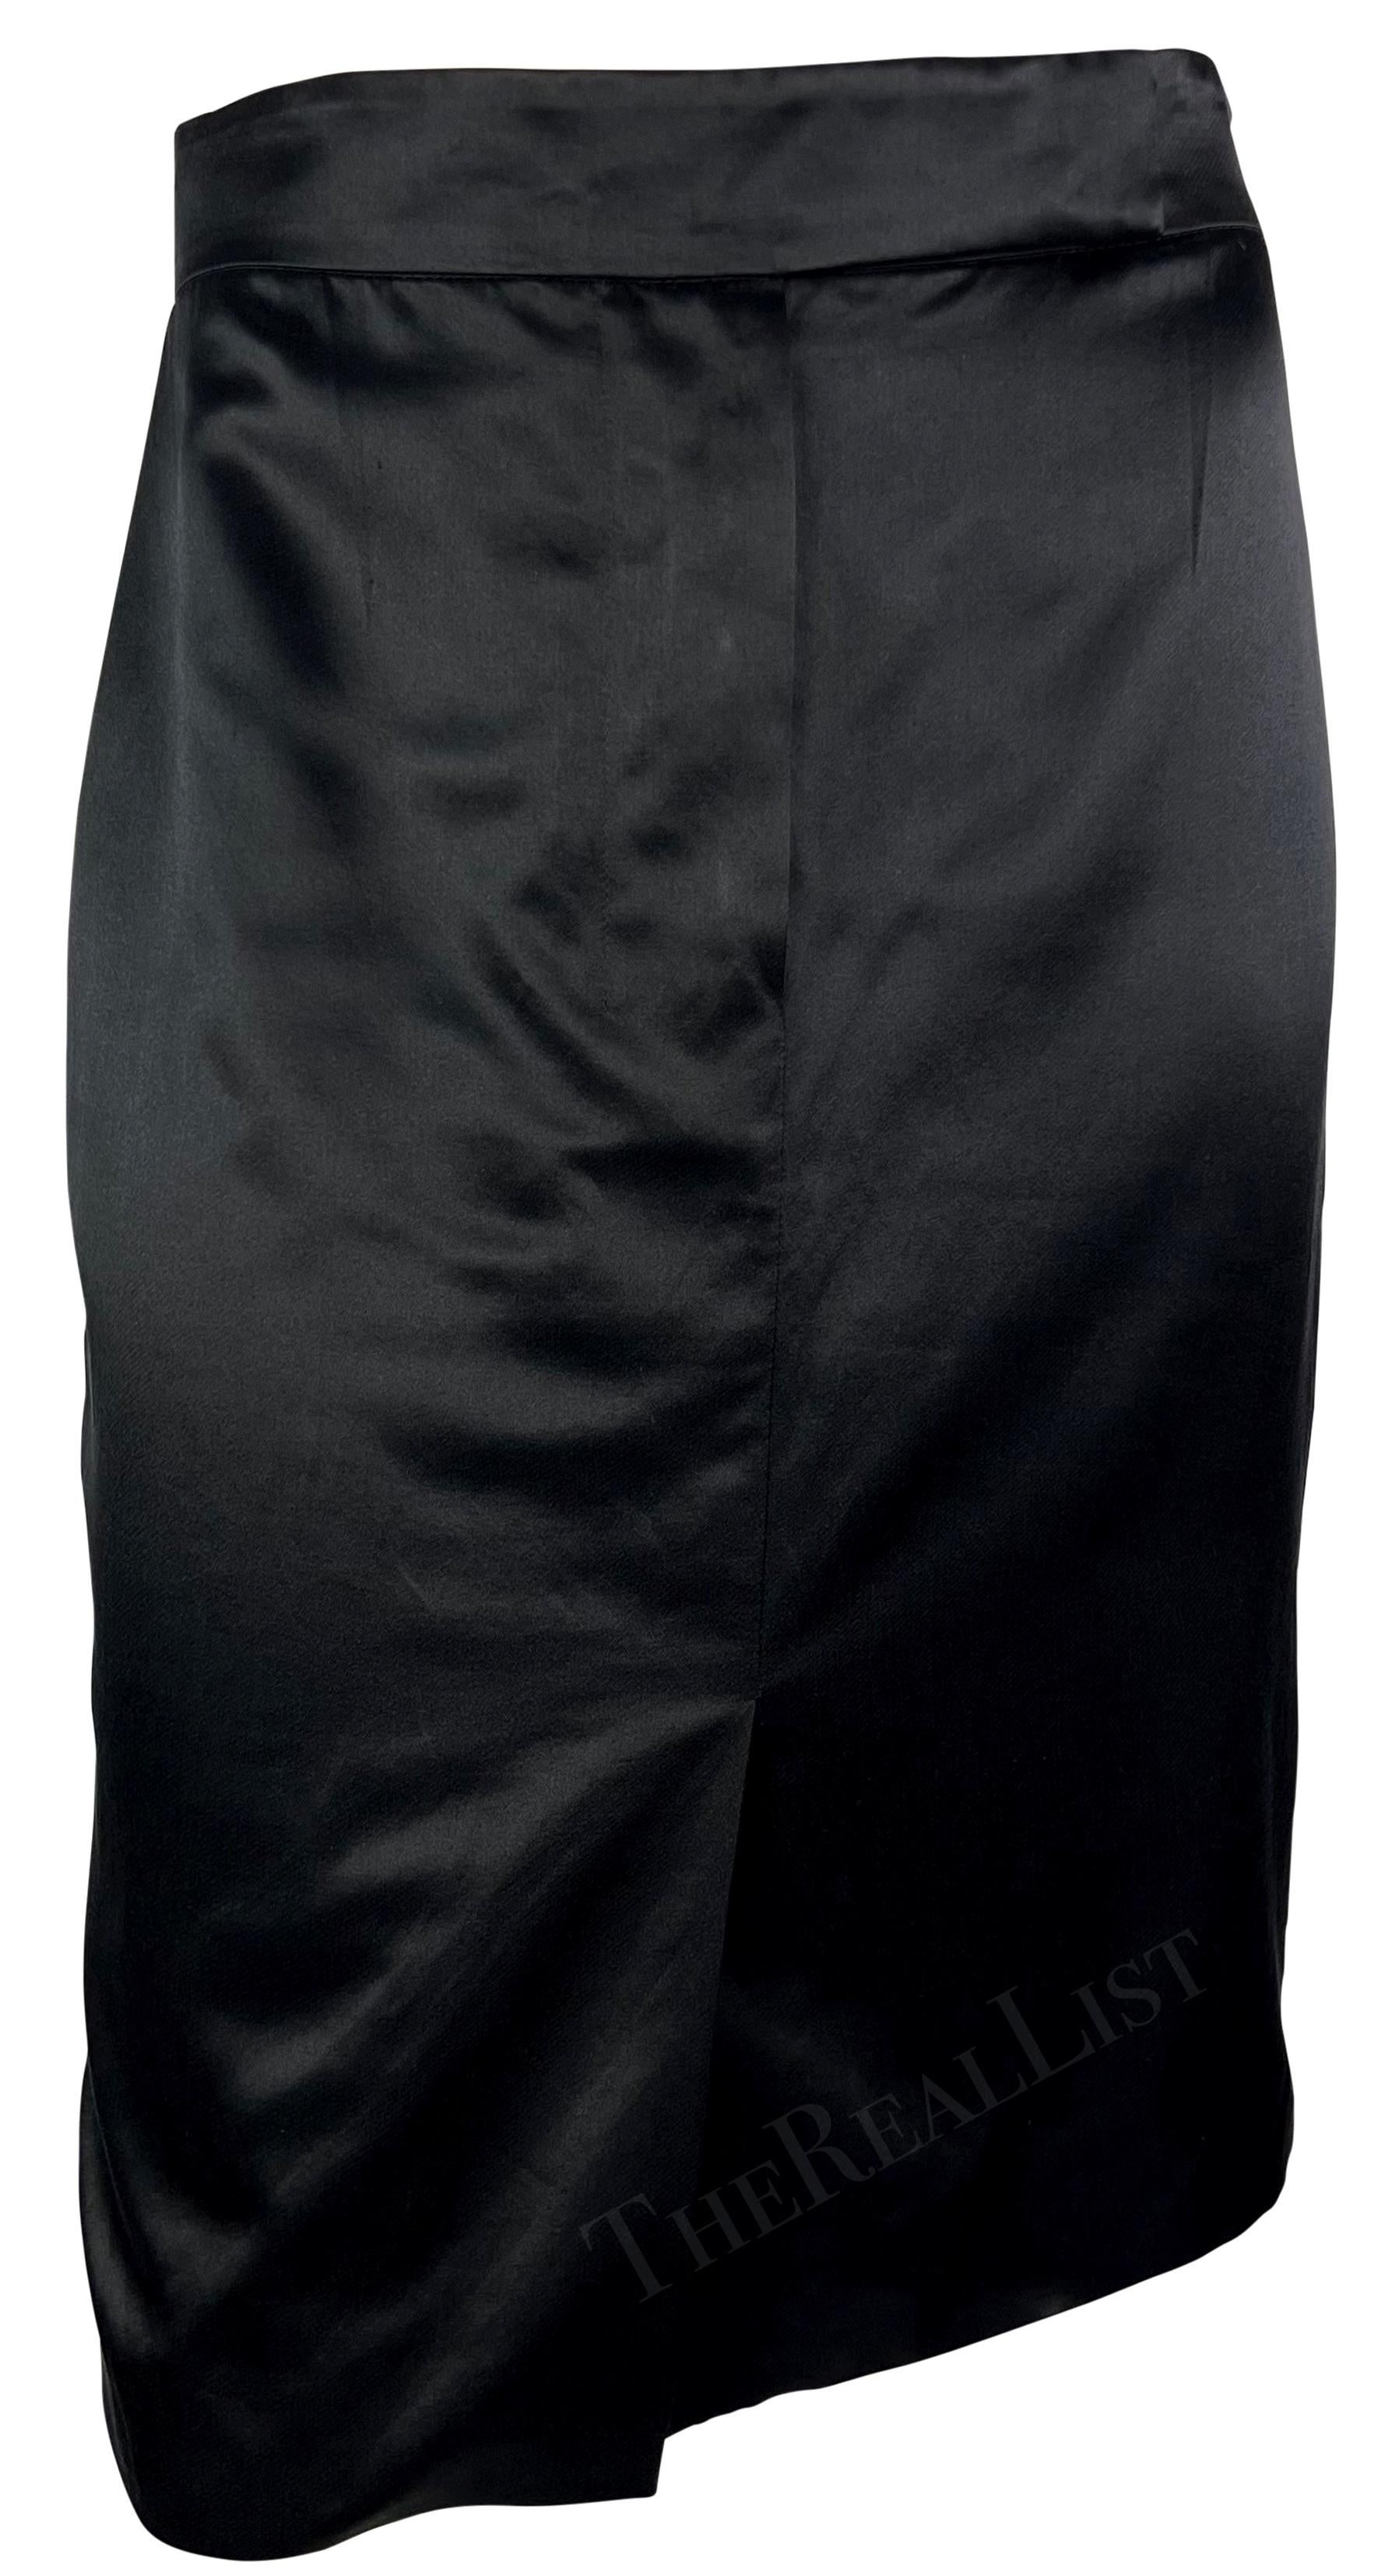 S/S 2003 Yves Saint Laurent by Tom Ford Female Body Print Runway Skirt For Sale 3